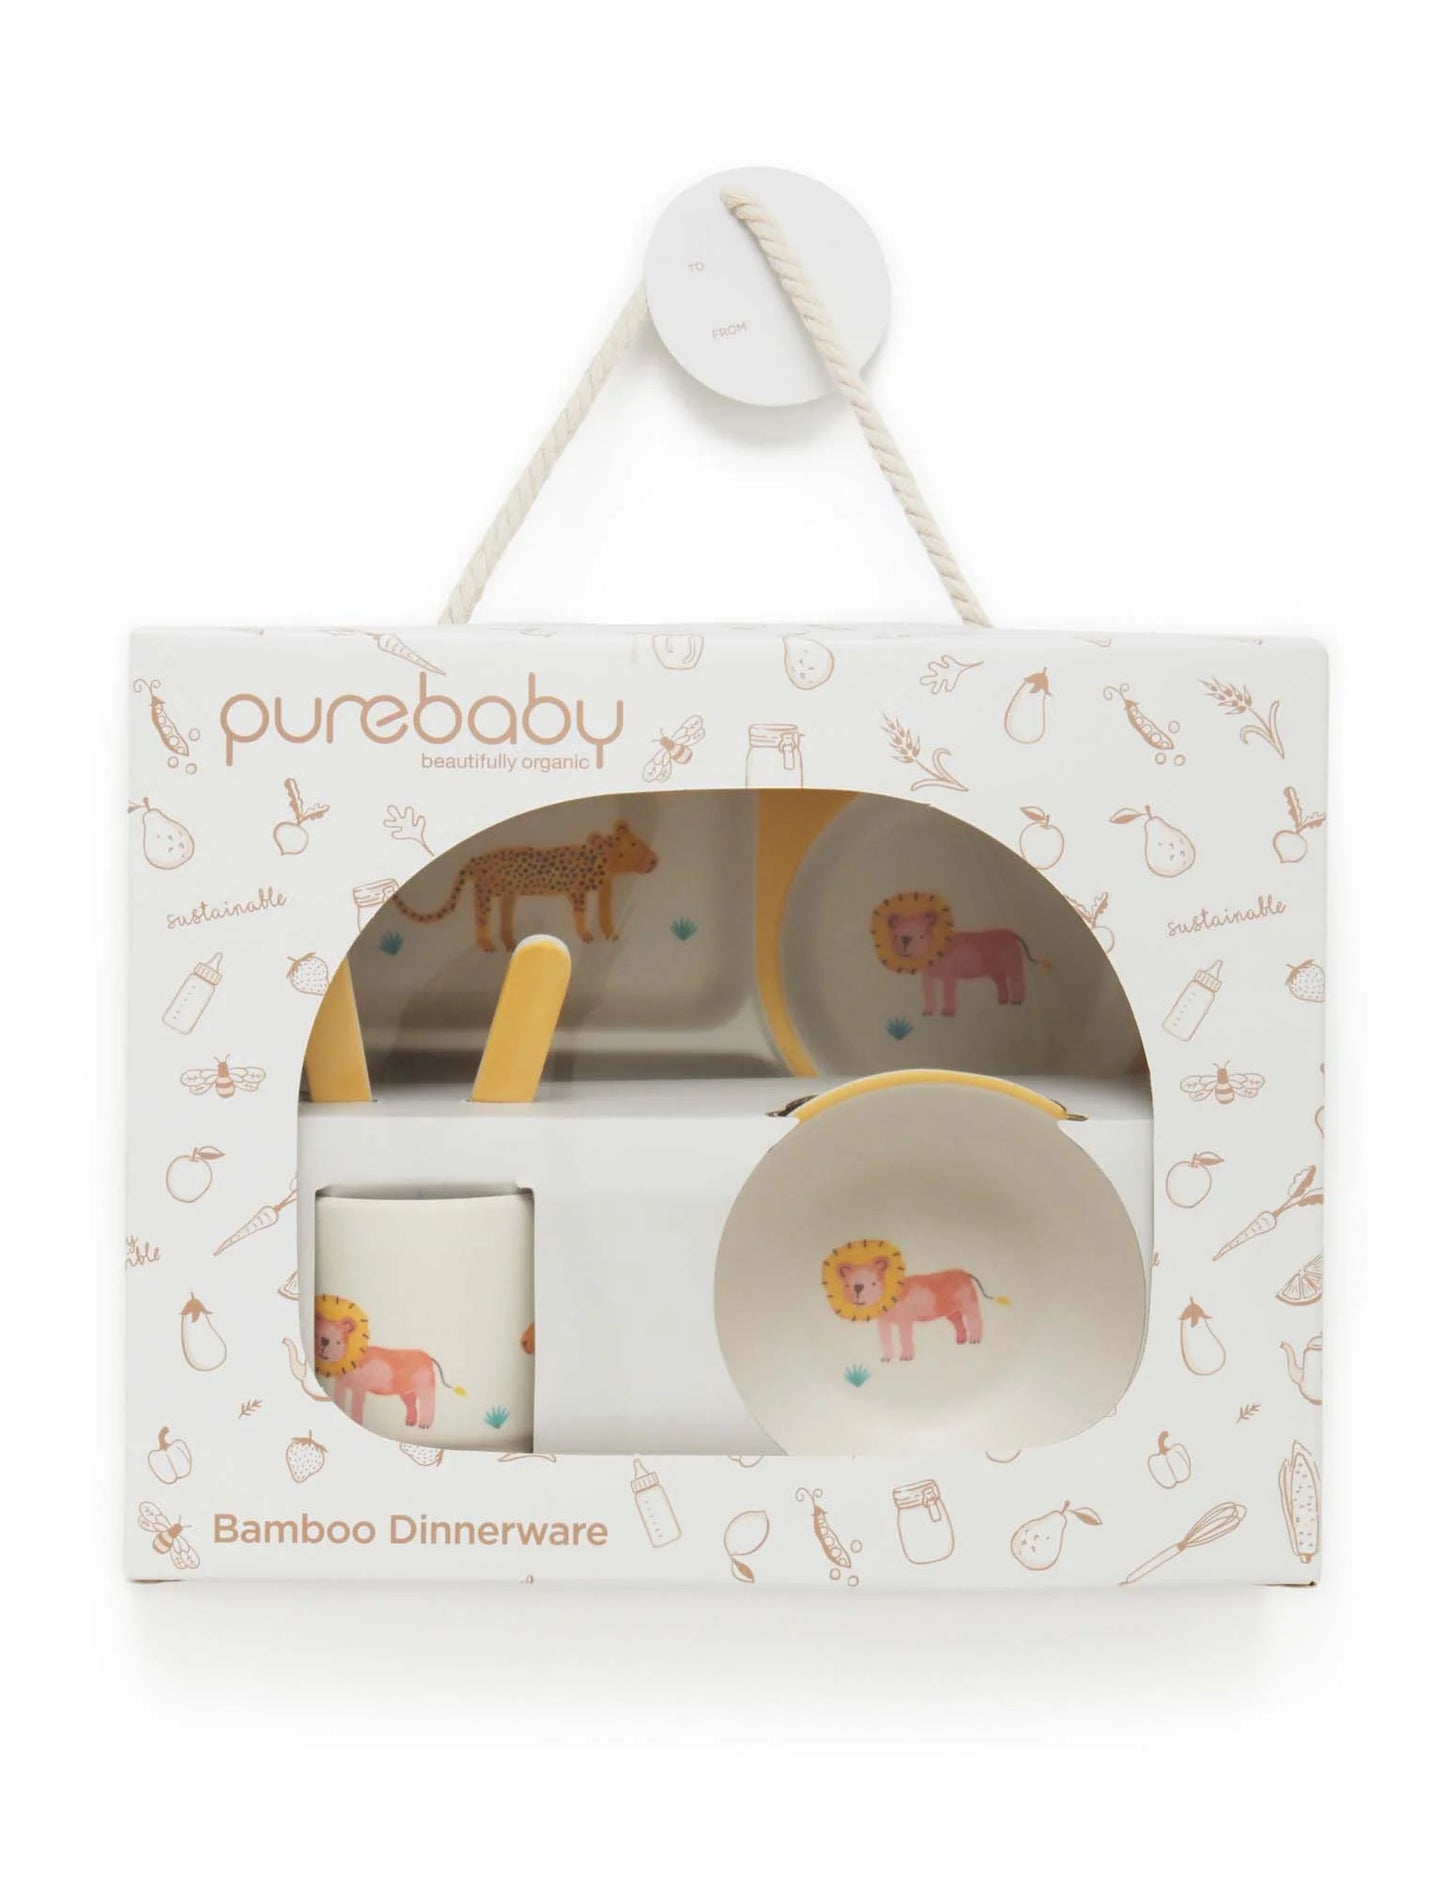 Purebaby Bamboo Dinnerware Set